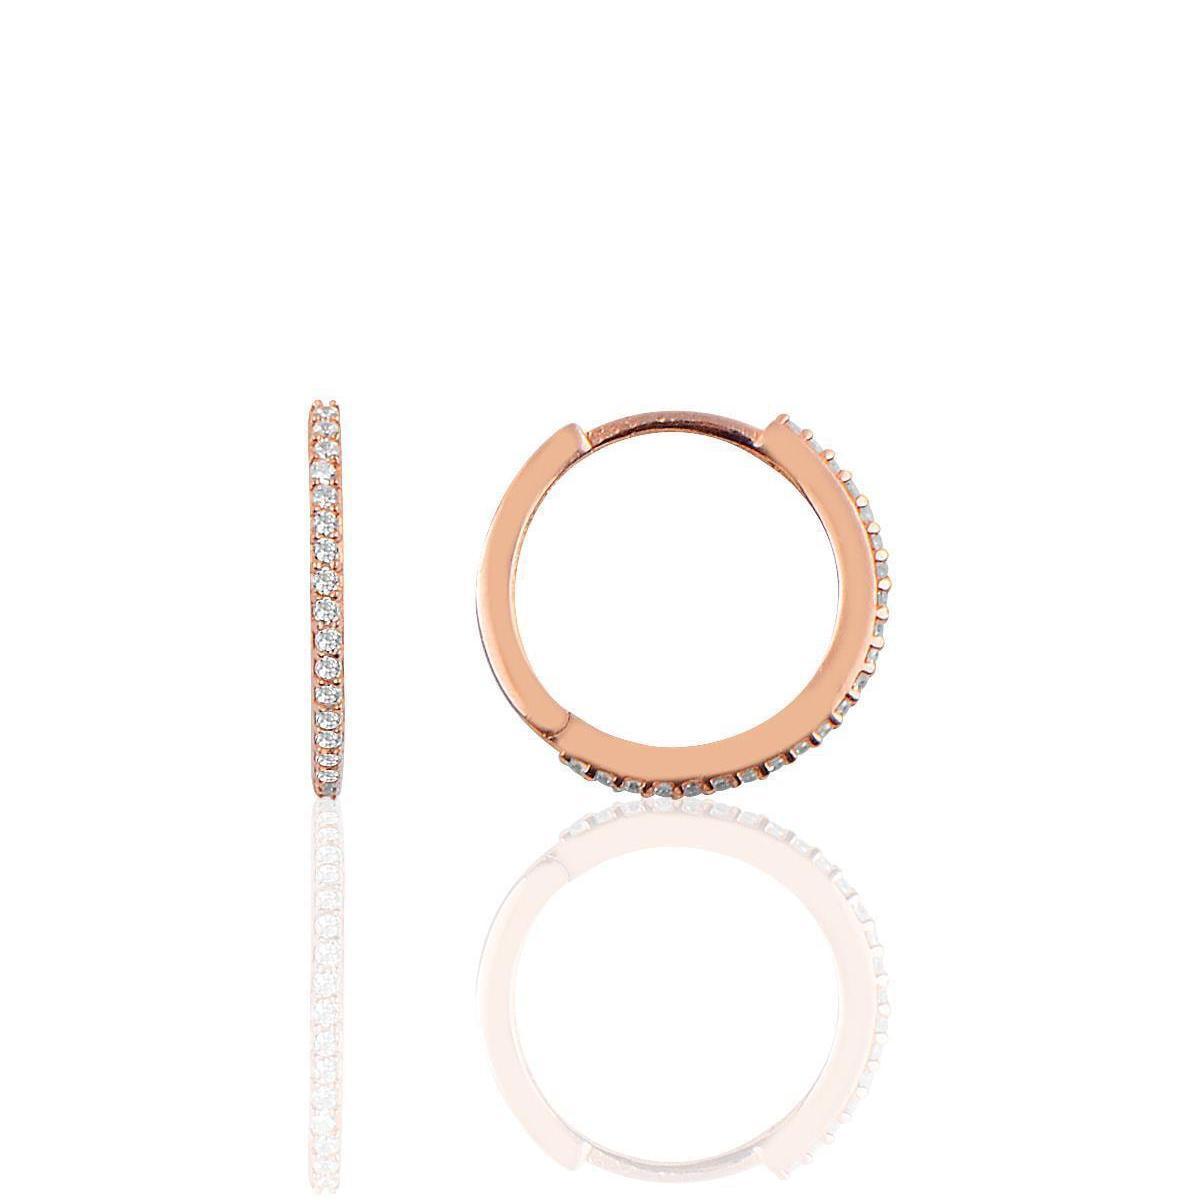 Huggie Earrings Gold • Huggie Earrings Diamond • Bridesmaid Gifts - Trending Silver Gifts